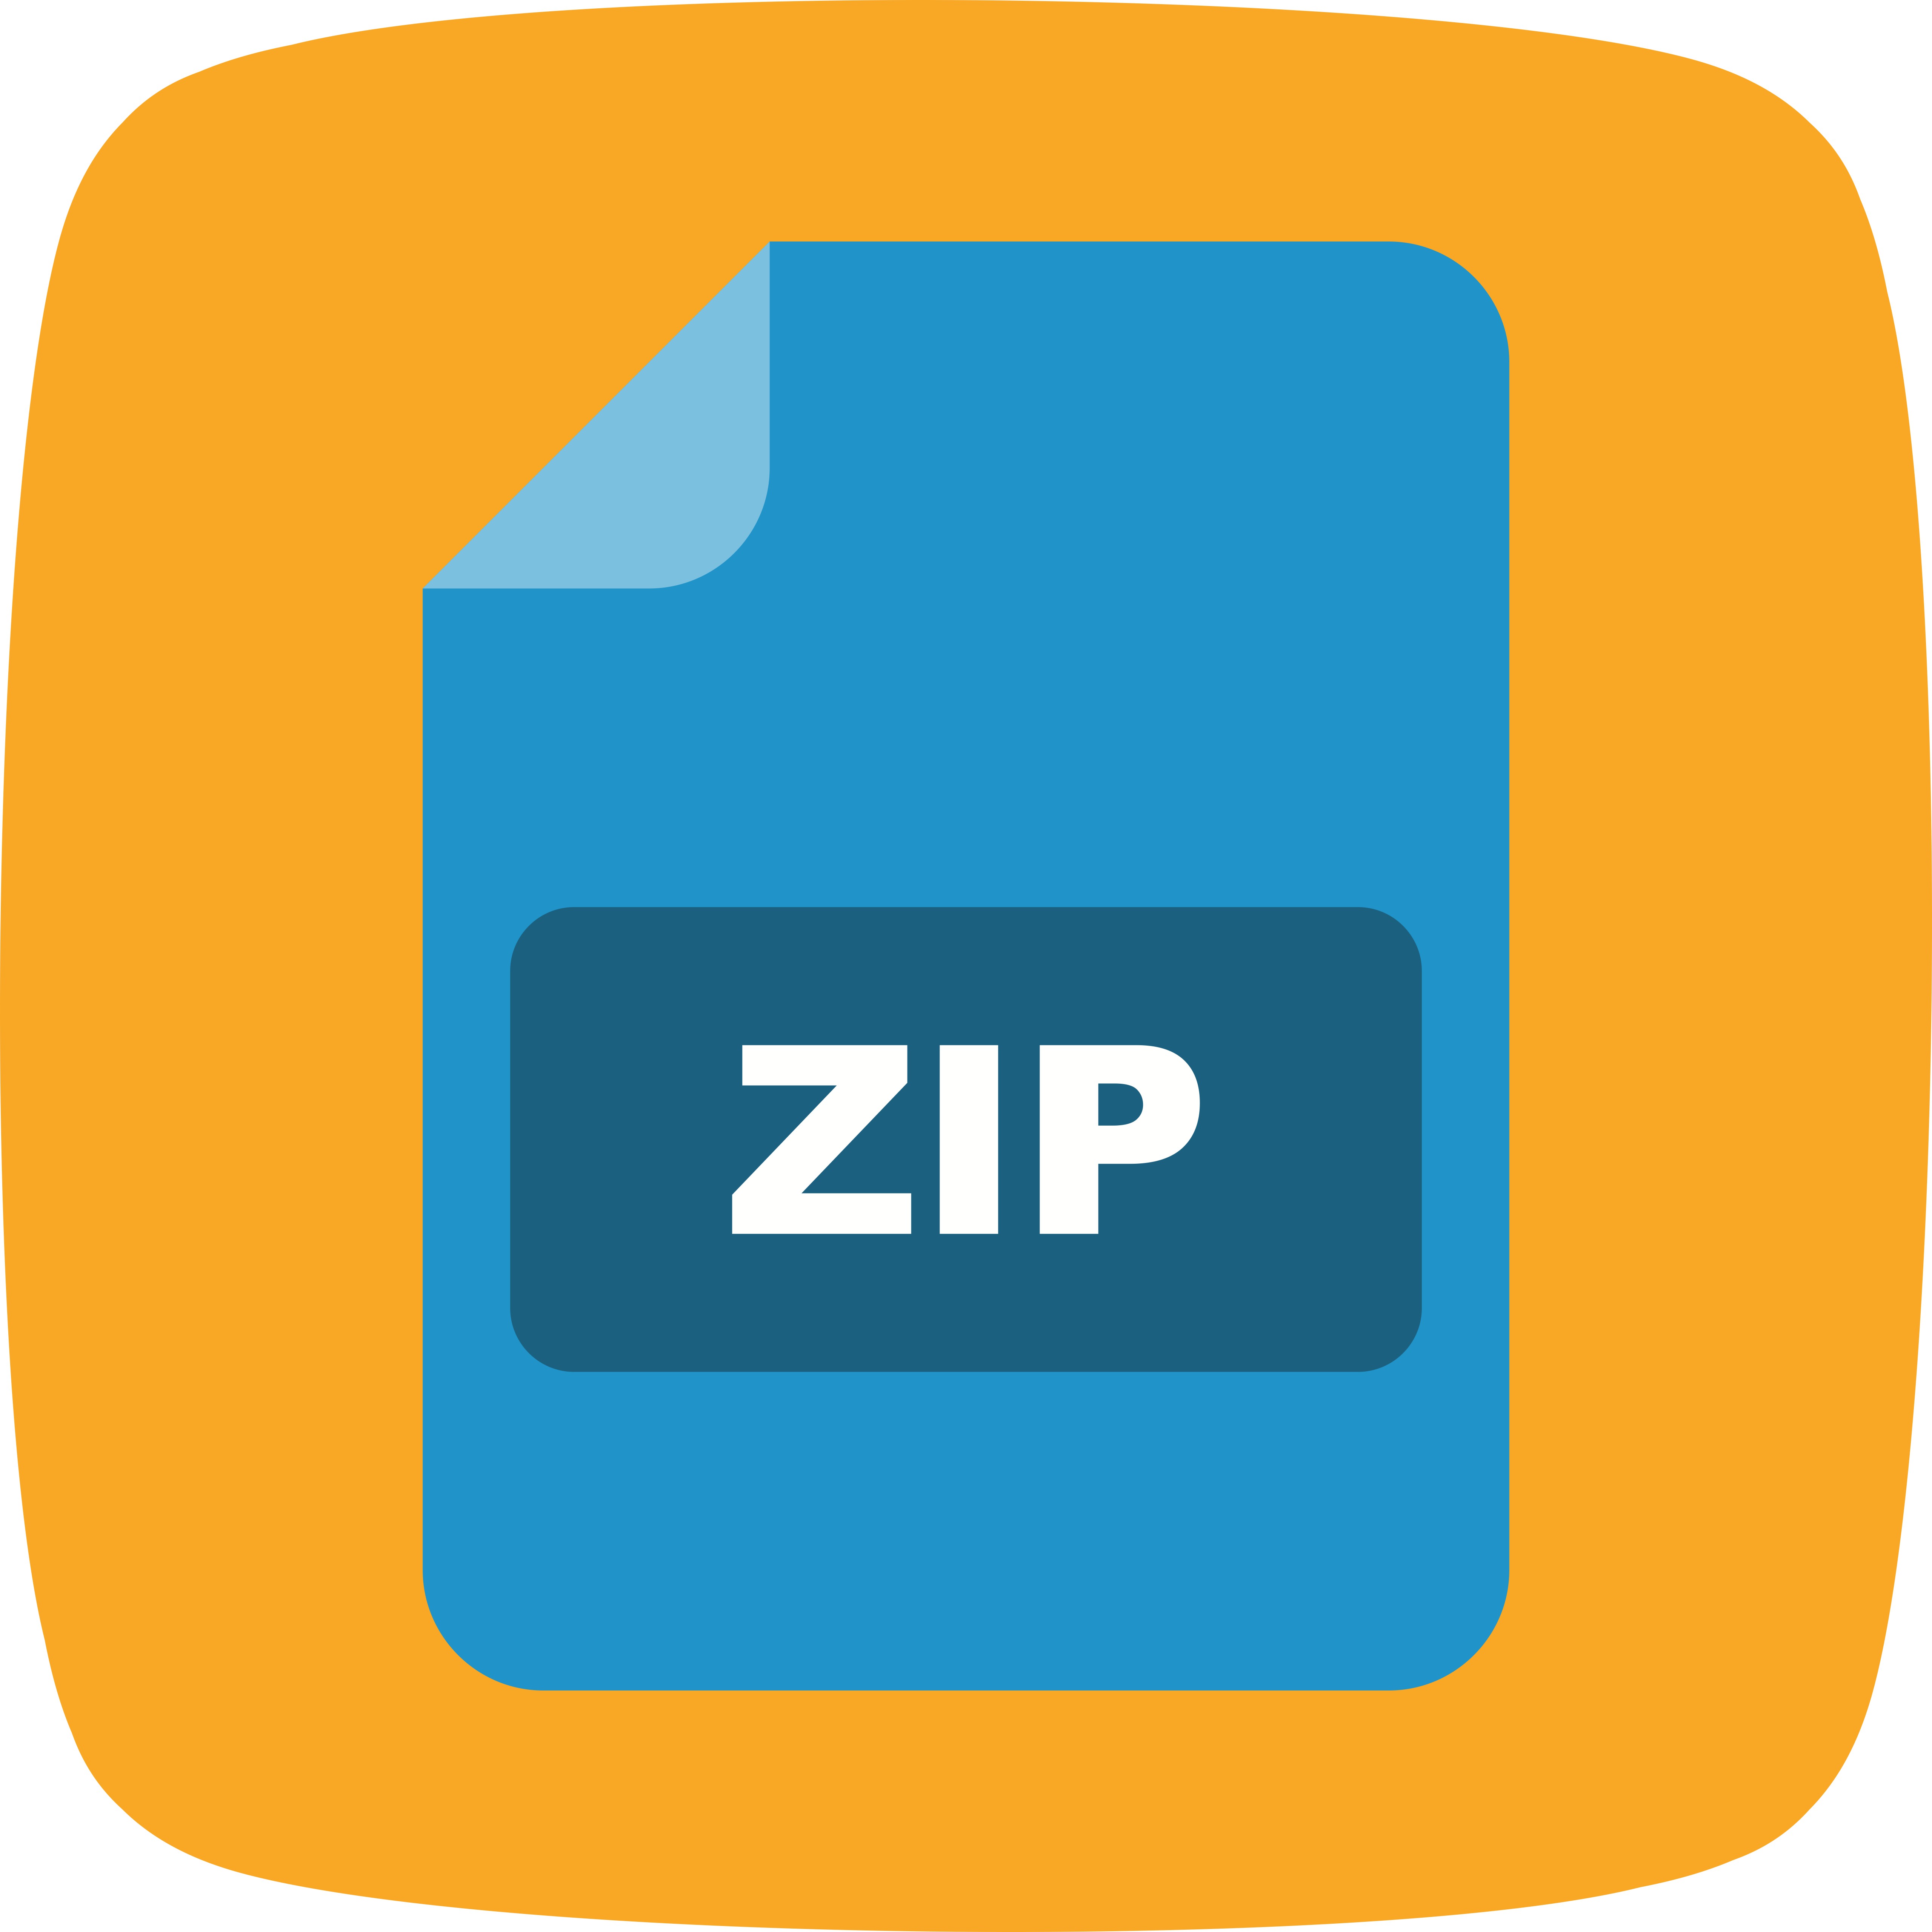 Download ZIP Vector Icon - Download Free Vectors, Clipart Graphics & Vector Art